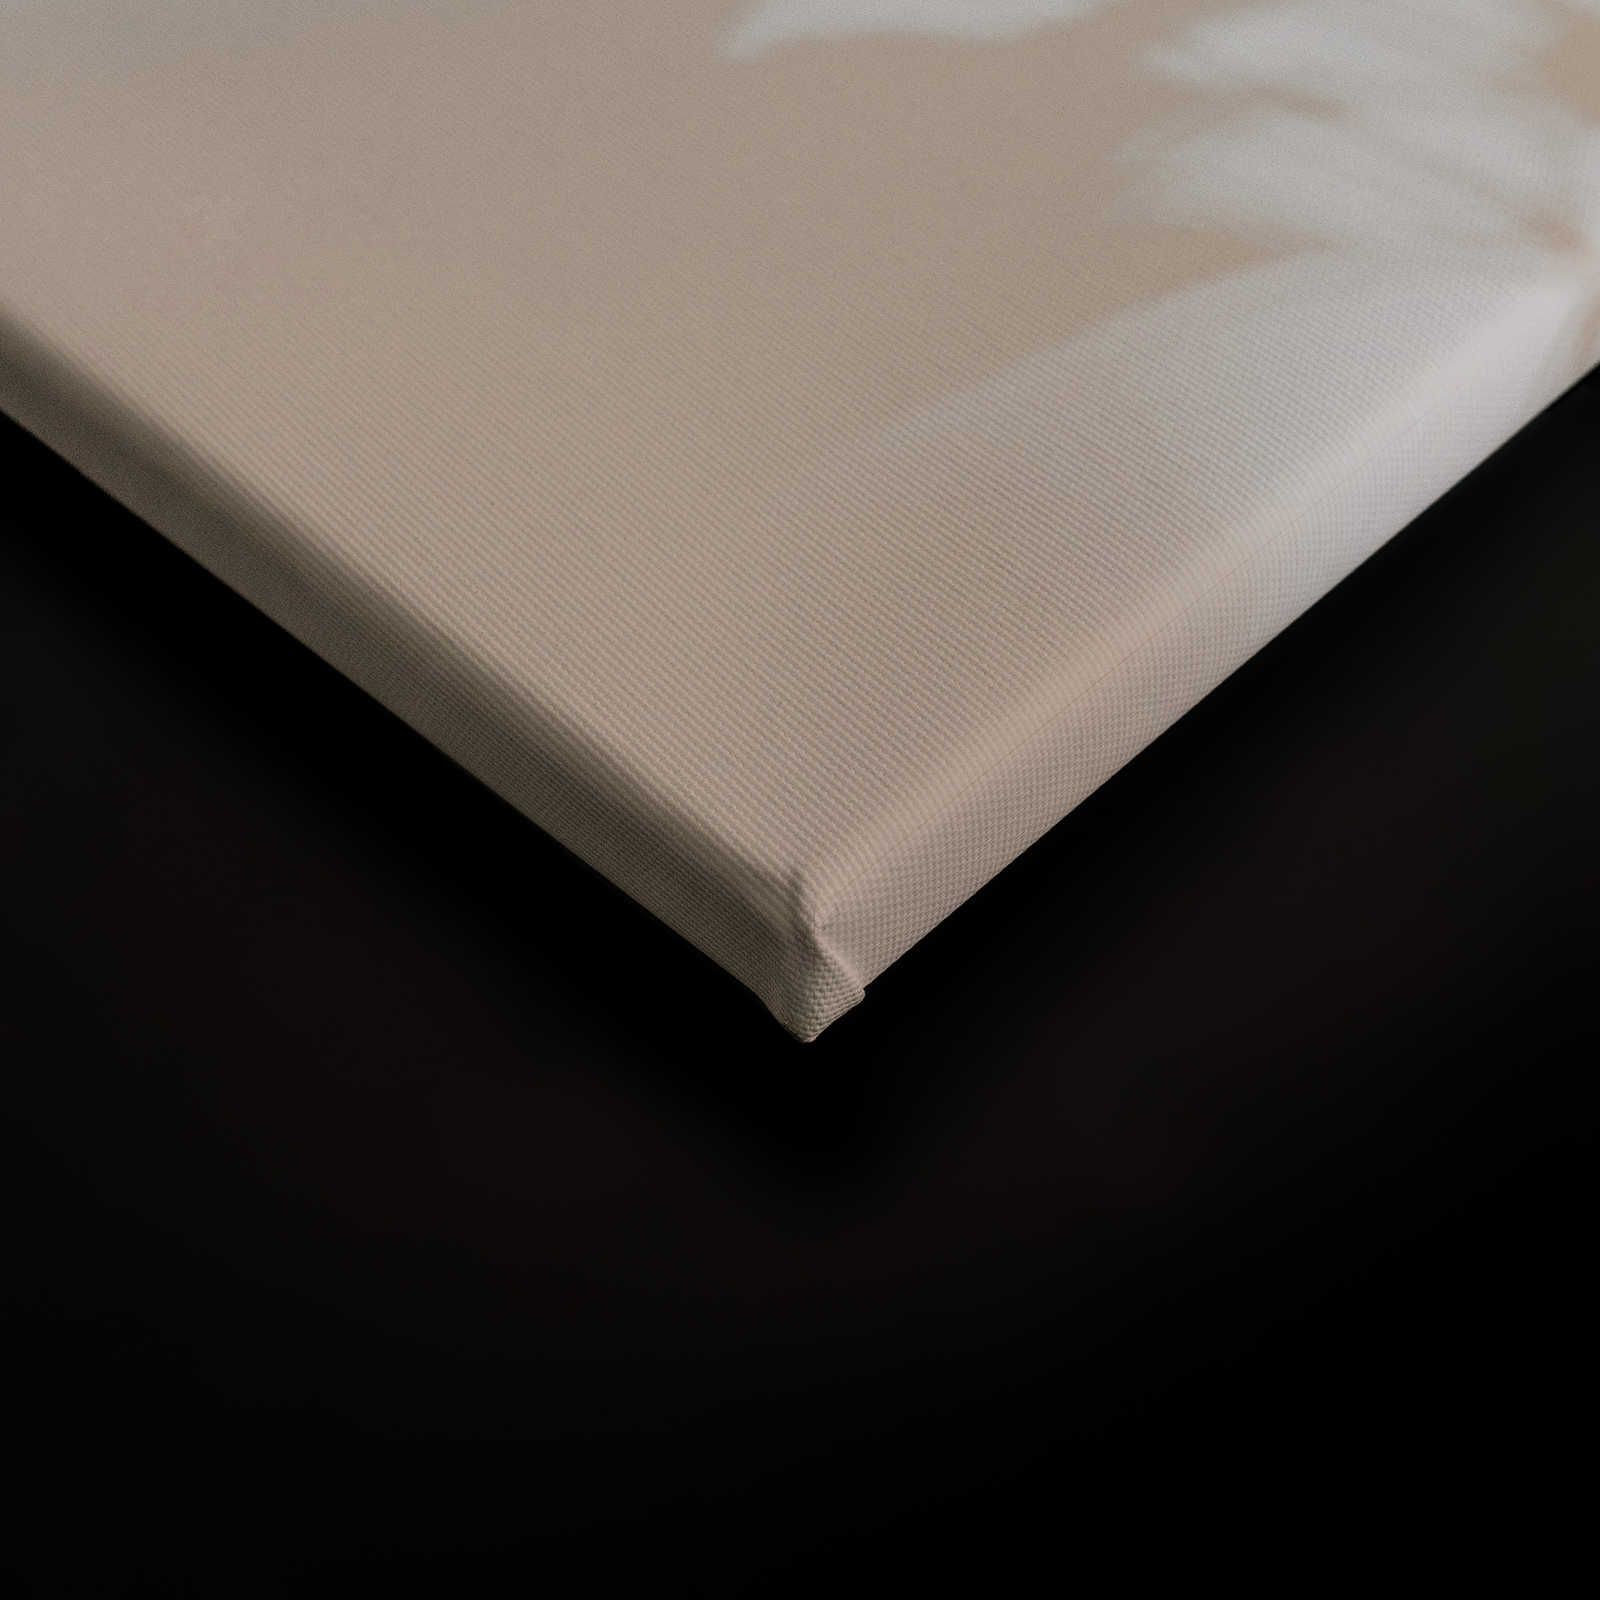             Shadow Room 1 - Naturaleza Cuadro en lienzo Beige y Blanco, diseño difuminado - 0,90 m x 0,60 m
        